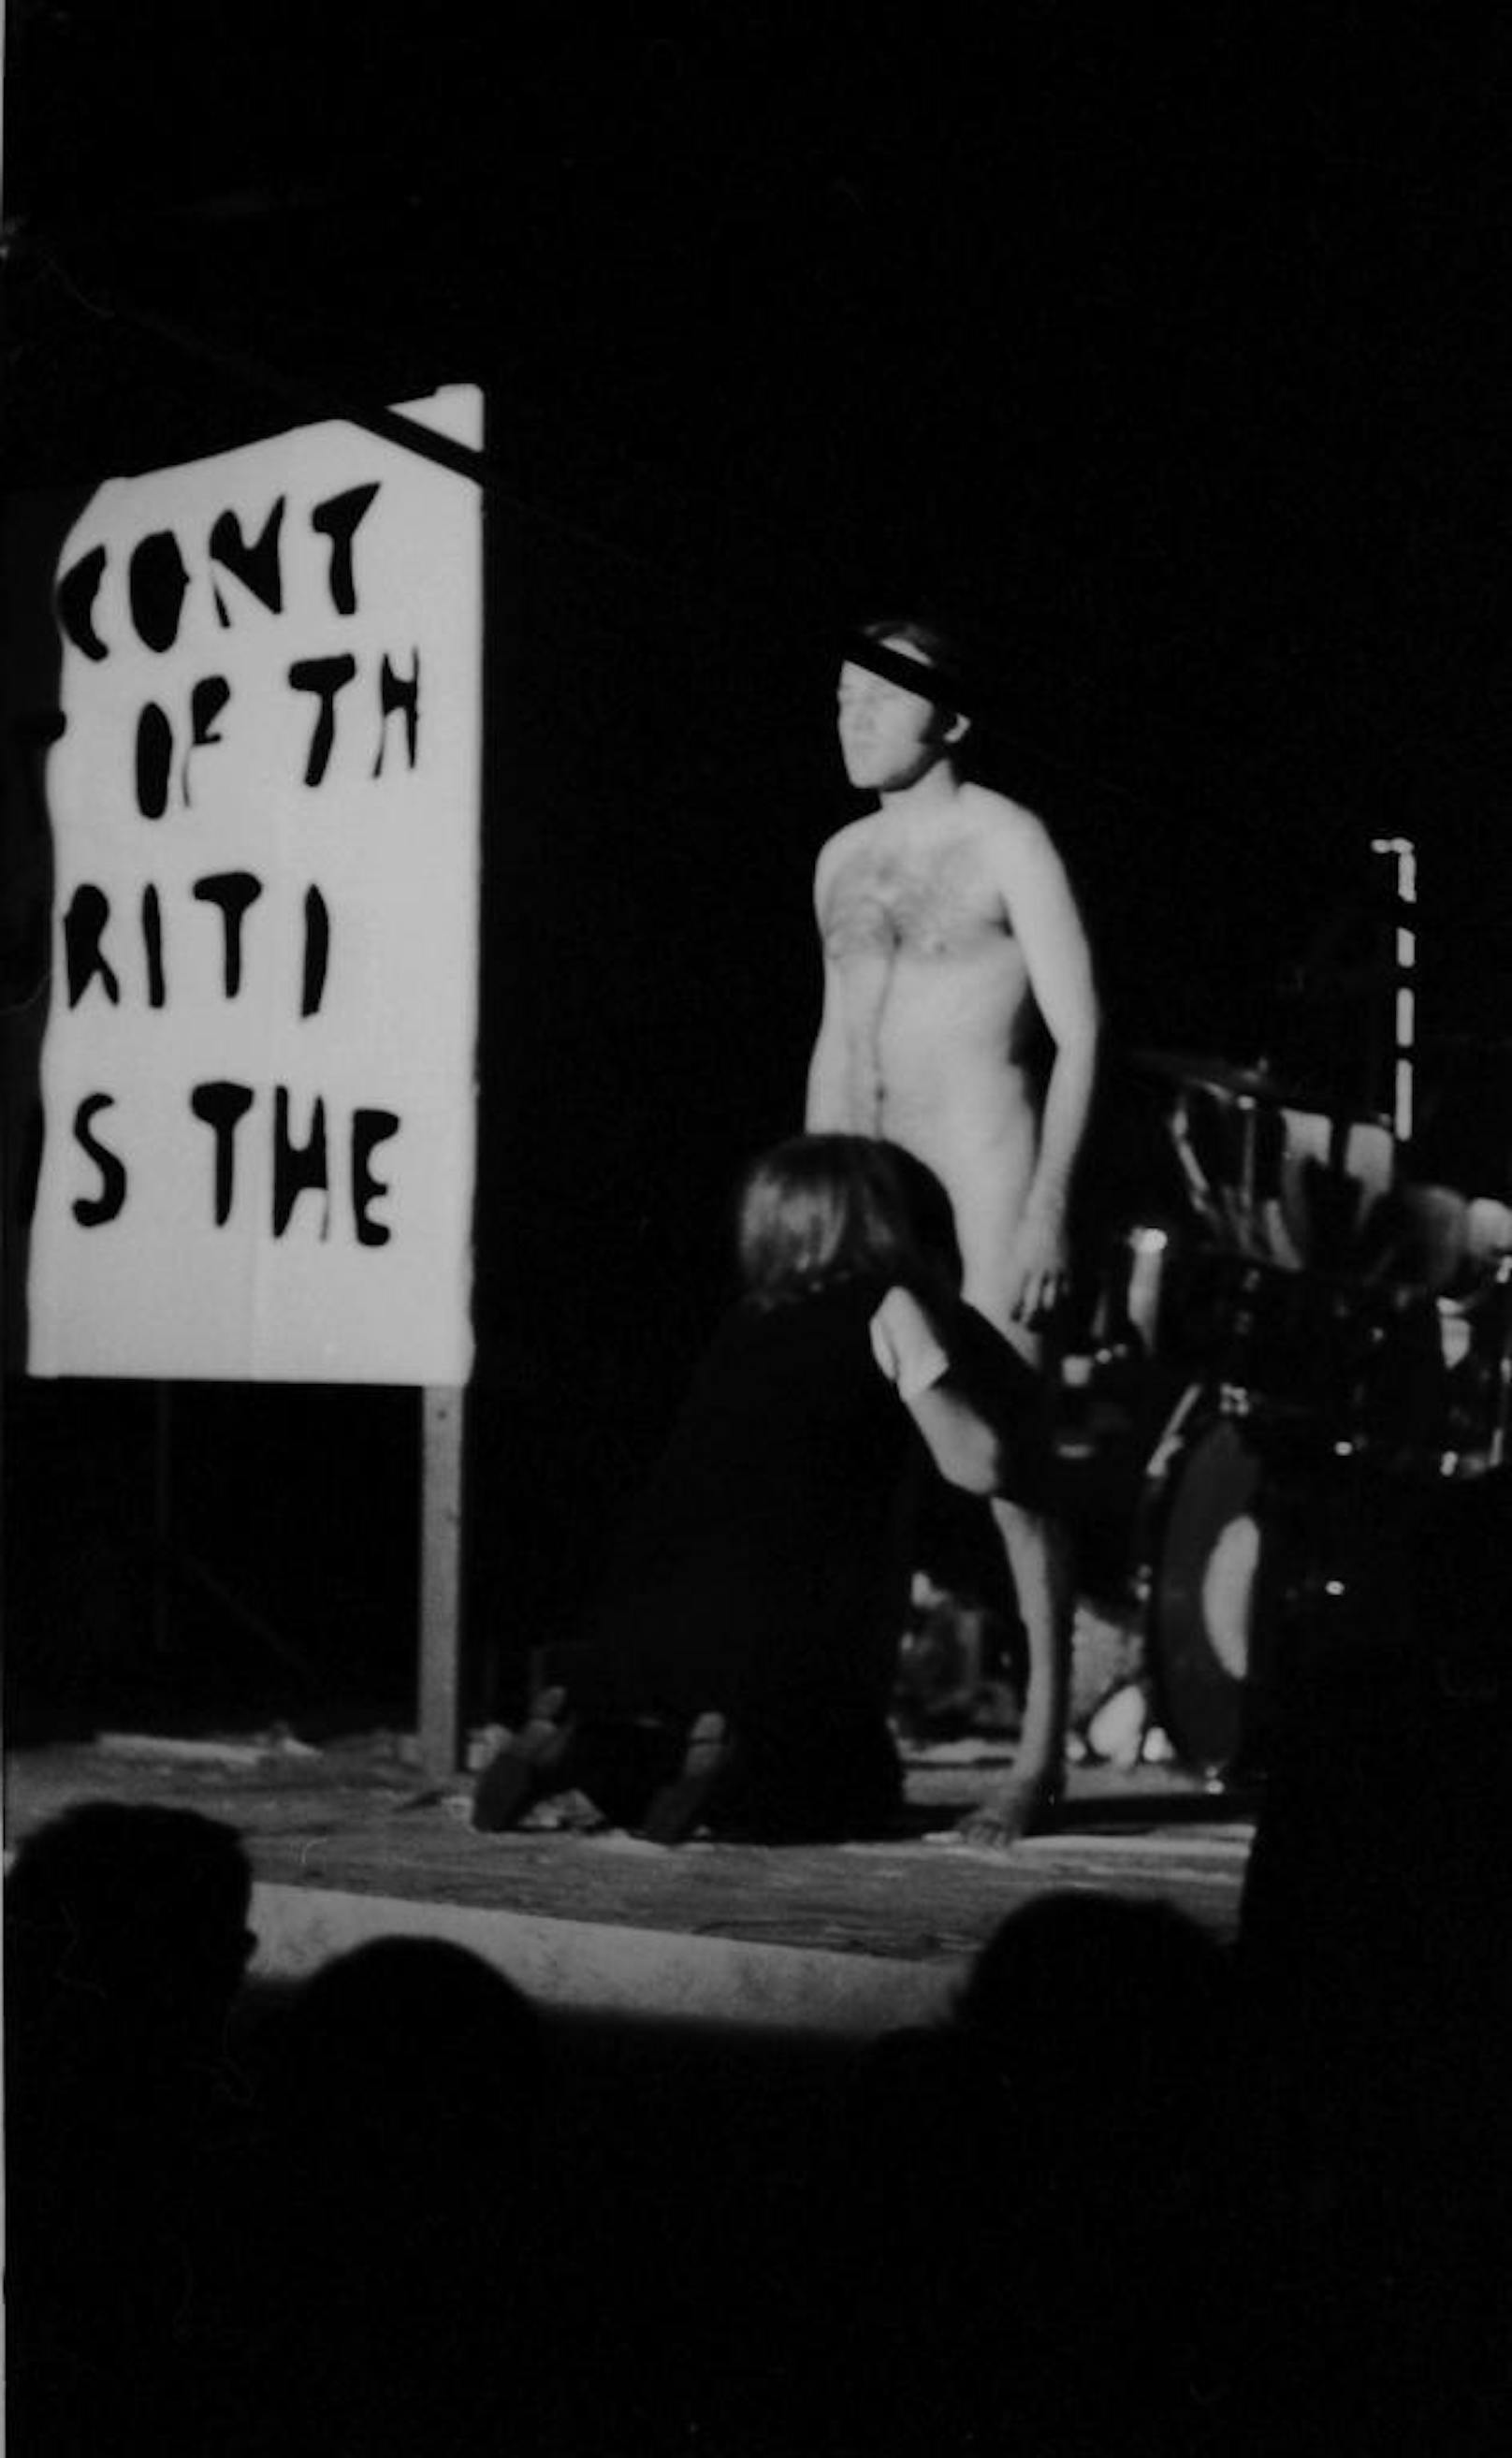 Eine provokante Anti-Vietnam-Aktion geriet 1969 in Zürich außer Kontrolle. Im Nazi-Duktus beschimpfen die Künstler das Publikum, dann deutet Valie Export Oralverkehr an. Schließlich greift sie zur Peitsche, er zu Stacheldrahtballen und sie gehen auf das Publikum los. Der Protest führt zur Panik: Das Publikum stürmte die Bühne, die Polizei wartete bereits an den Hinterausgängen.